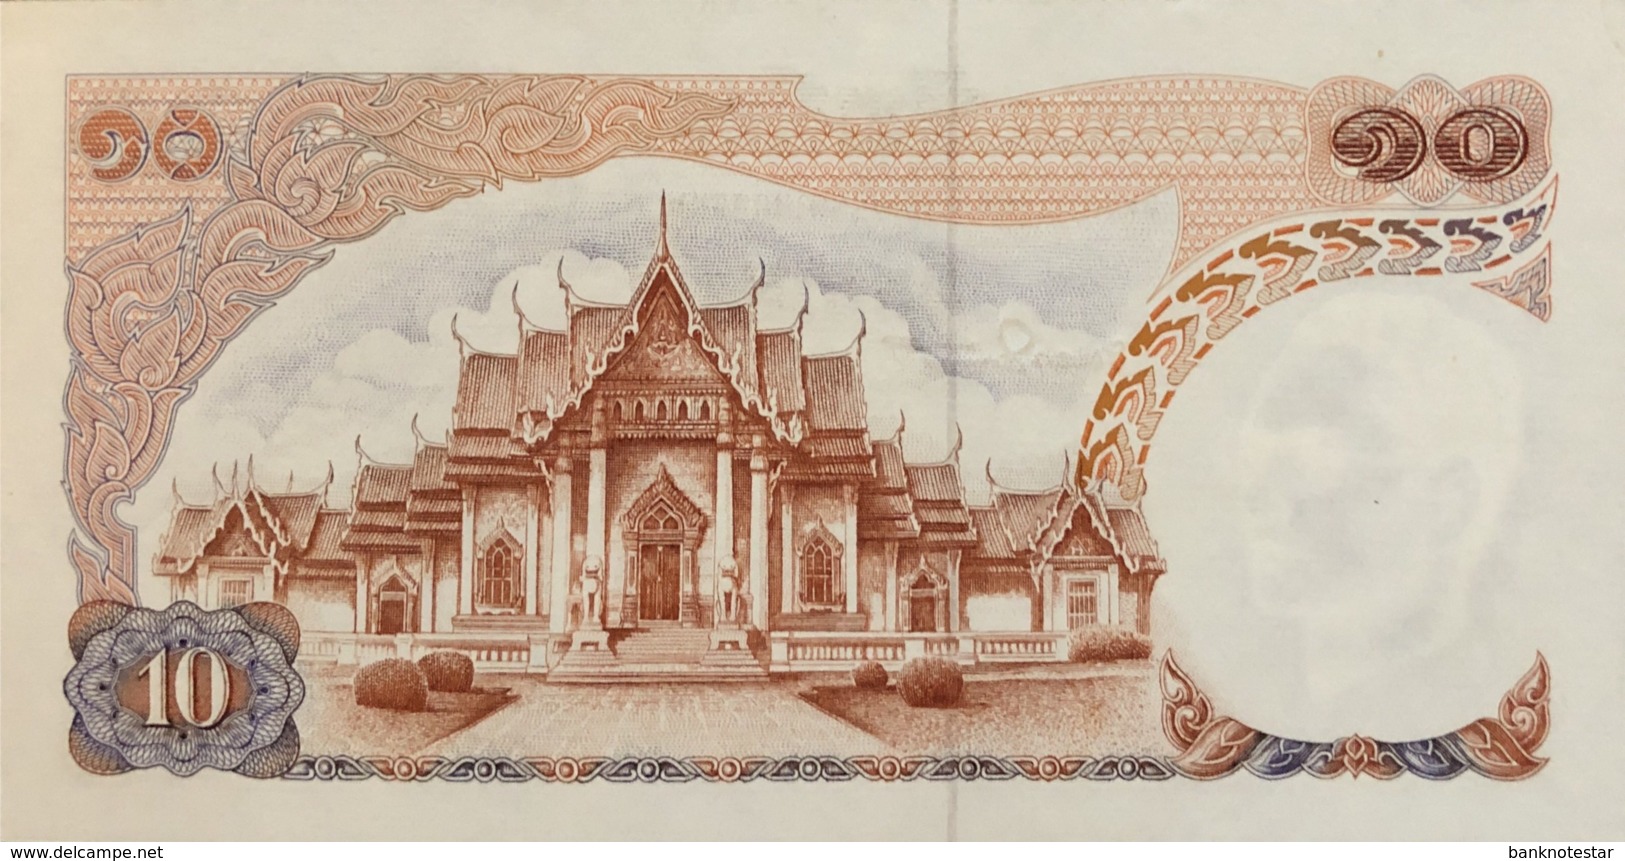 Thailand 10 Bath, P-83 (1969) - UNC - Signature 50 - Thailand